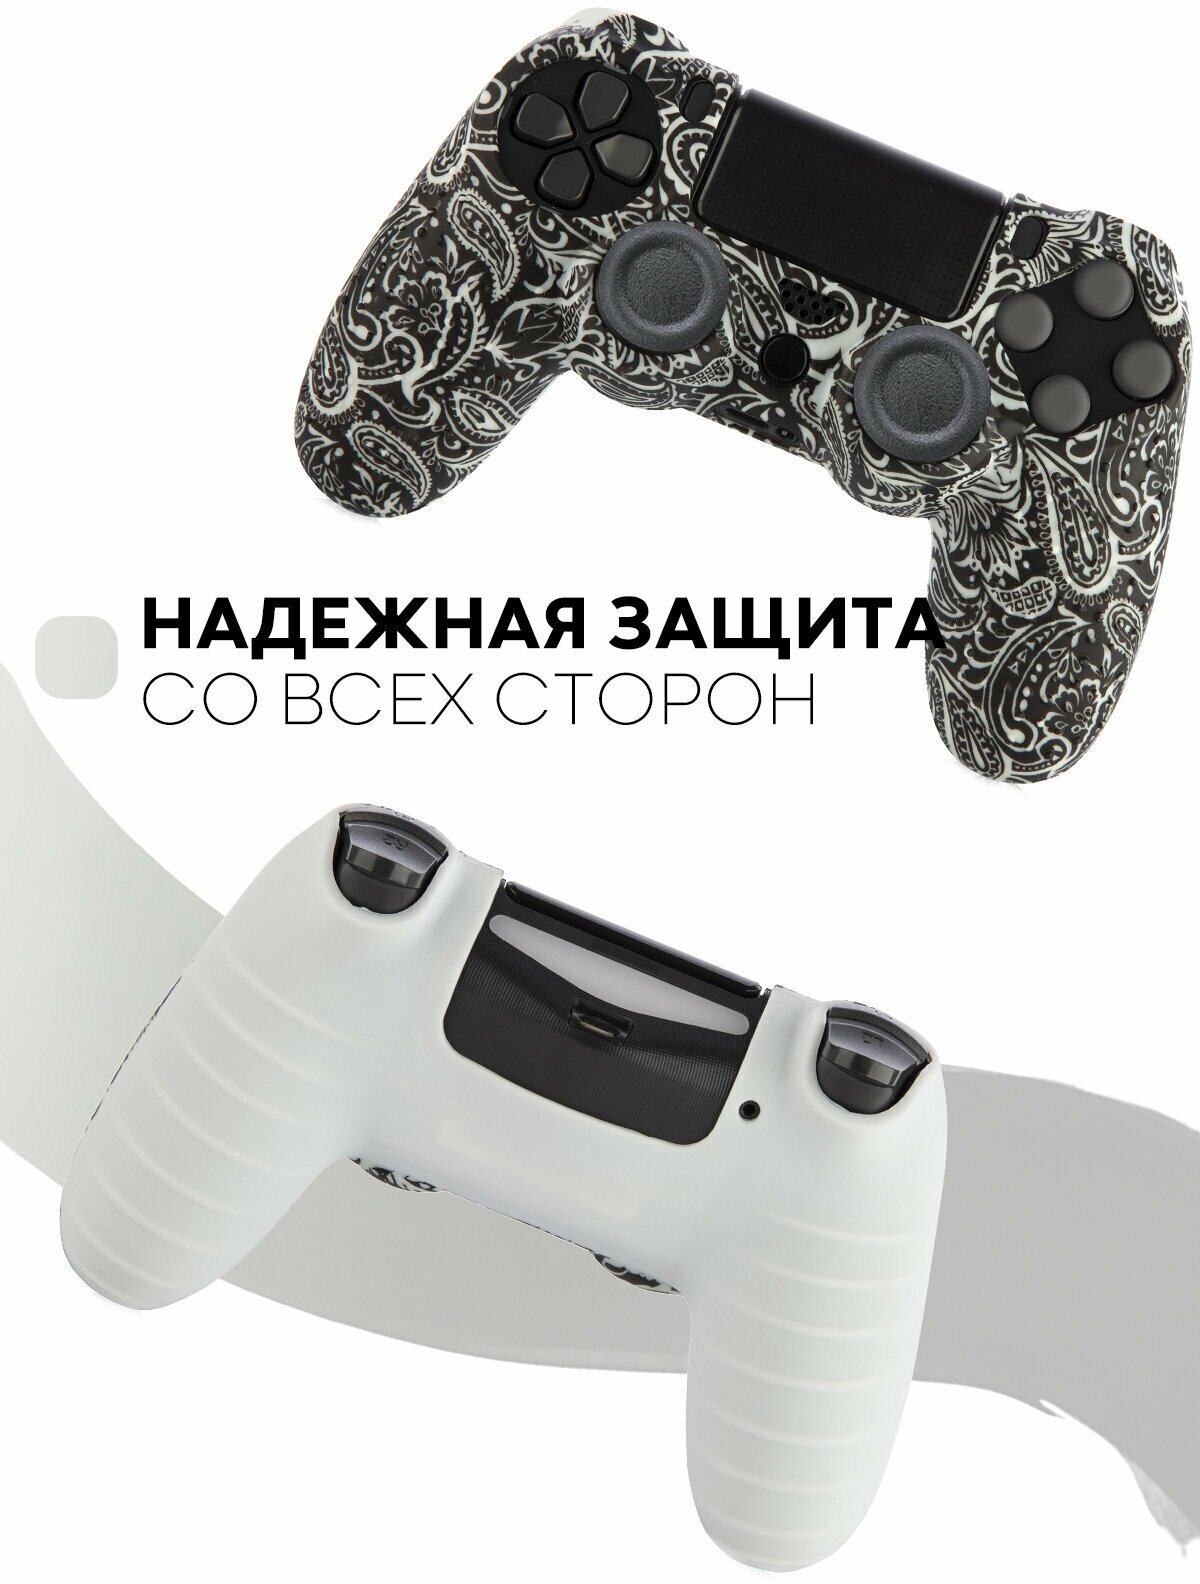 Защитная силиконовая накладка -чехол на геймпада Sony PlayStation 4 DualShock (контроллер, джойстик Сони Плэйстэйшн 4) с рисунком, черно-белые узоры